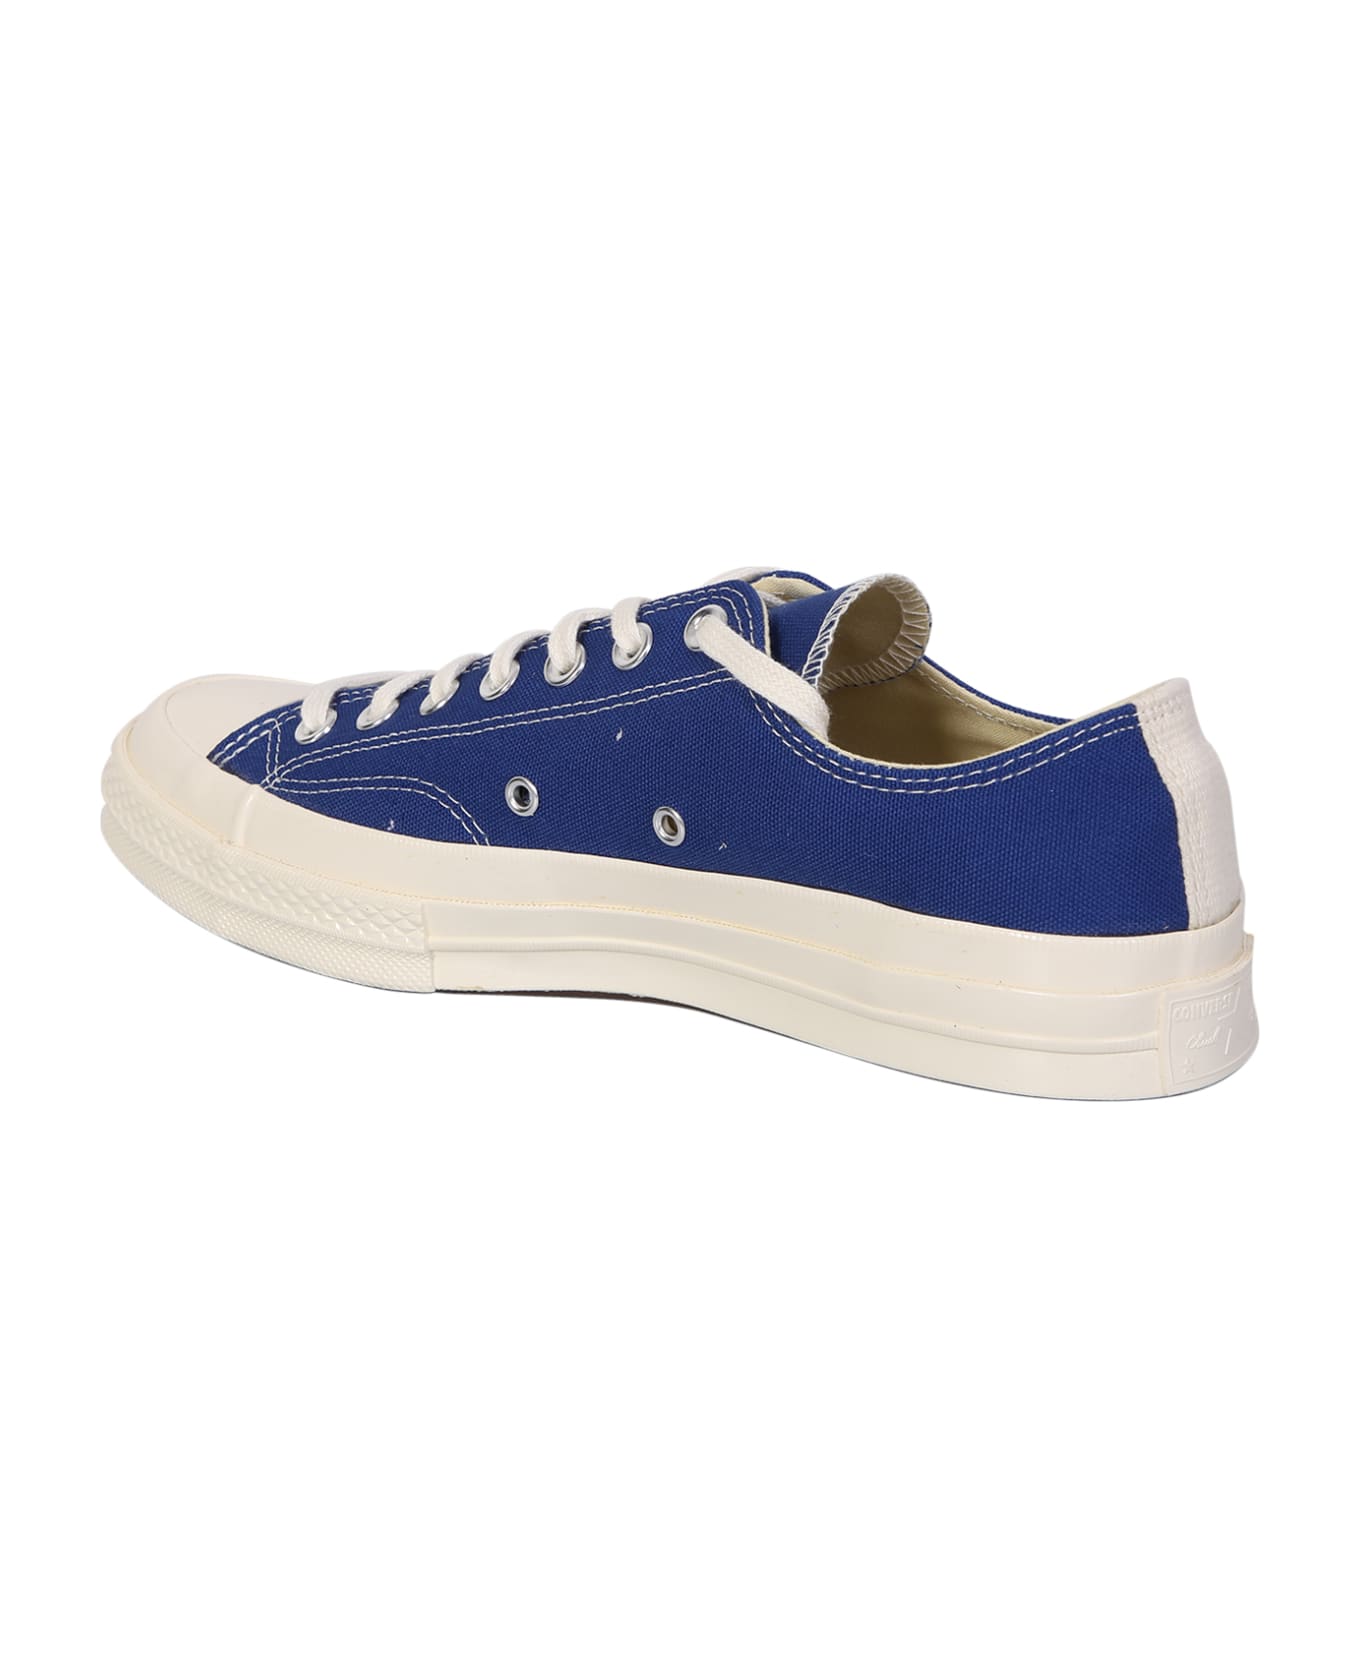 Comme des Garçons Play Blue Converse Chuck Taylor Sneakers - Blue